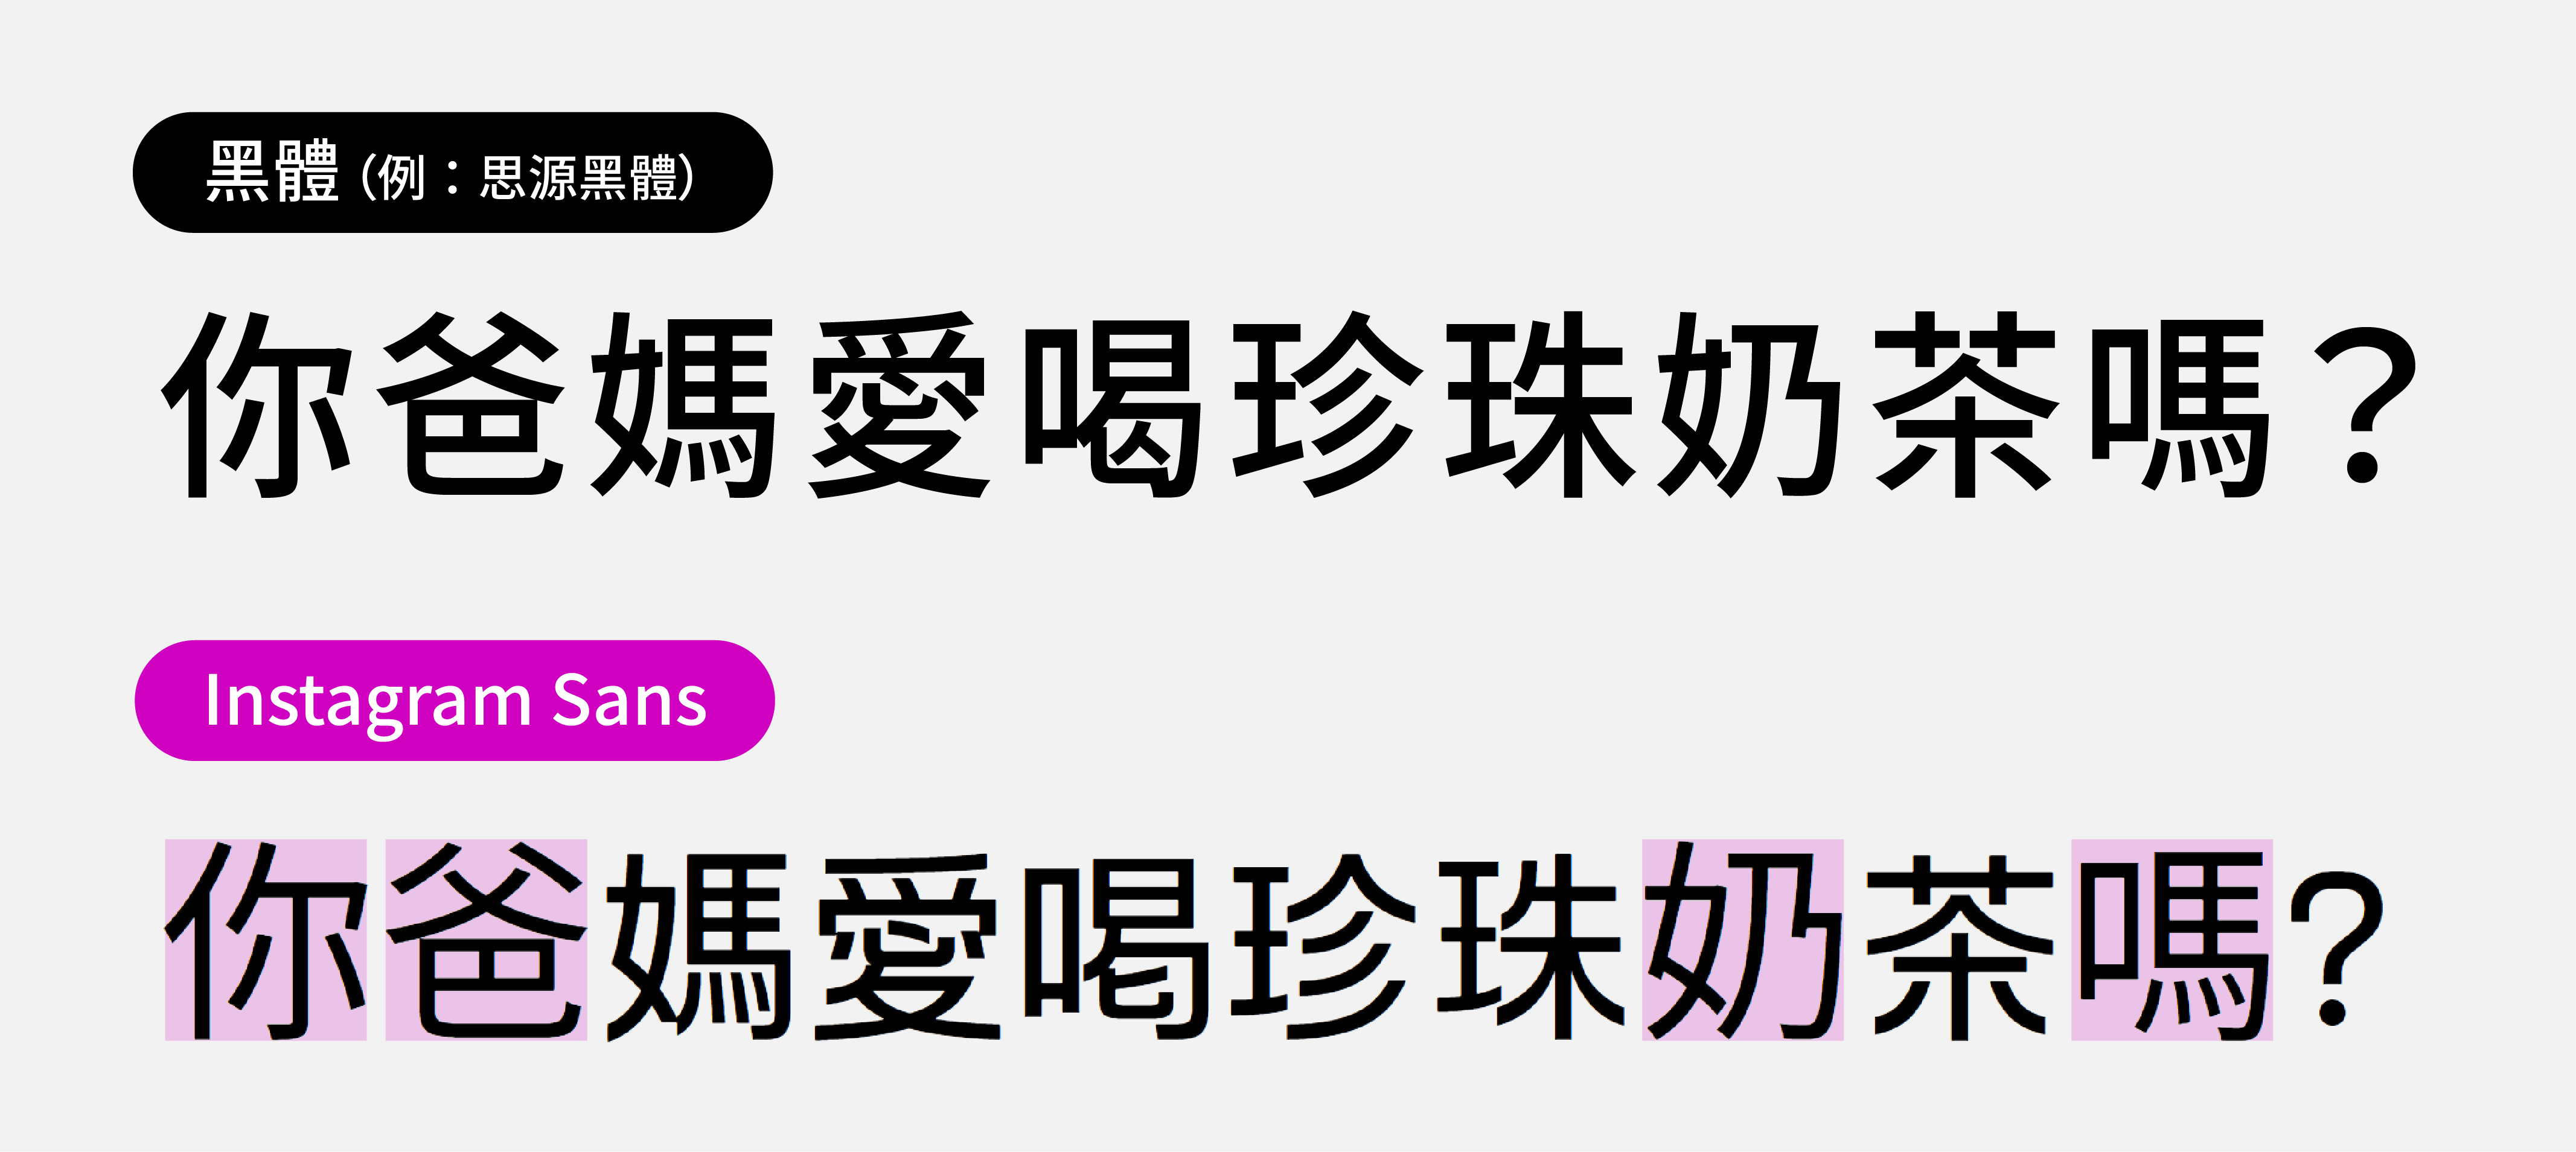 Instagram Sans 中文缺字對比